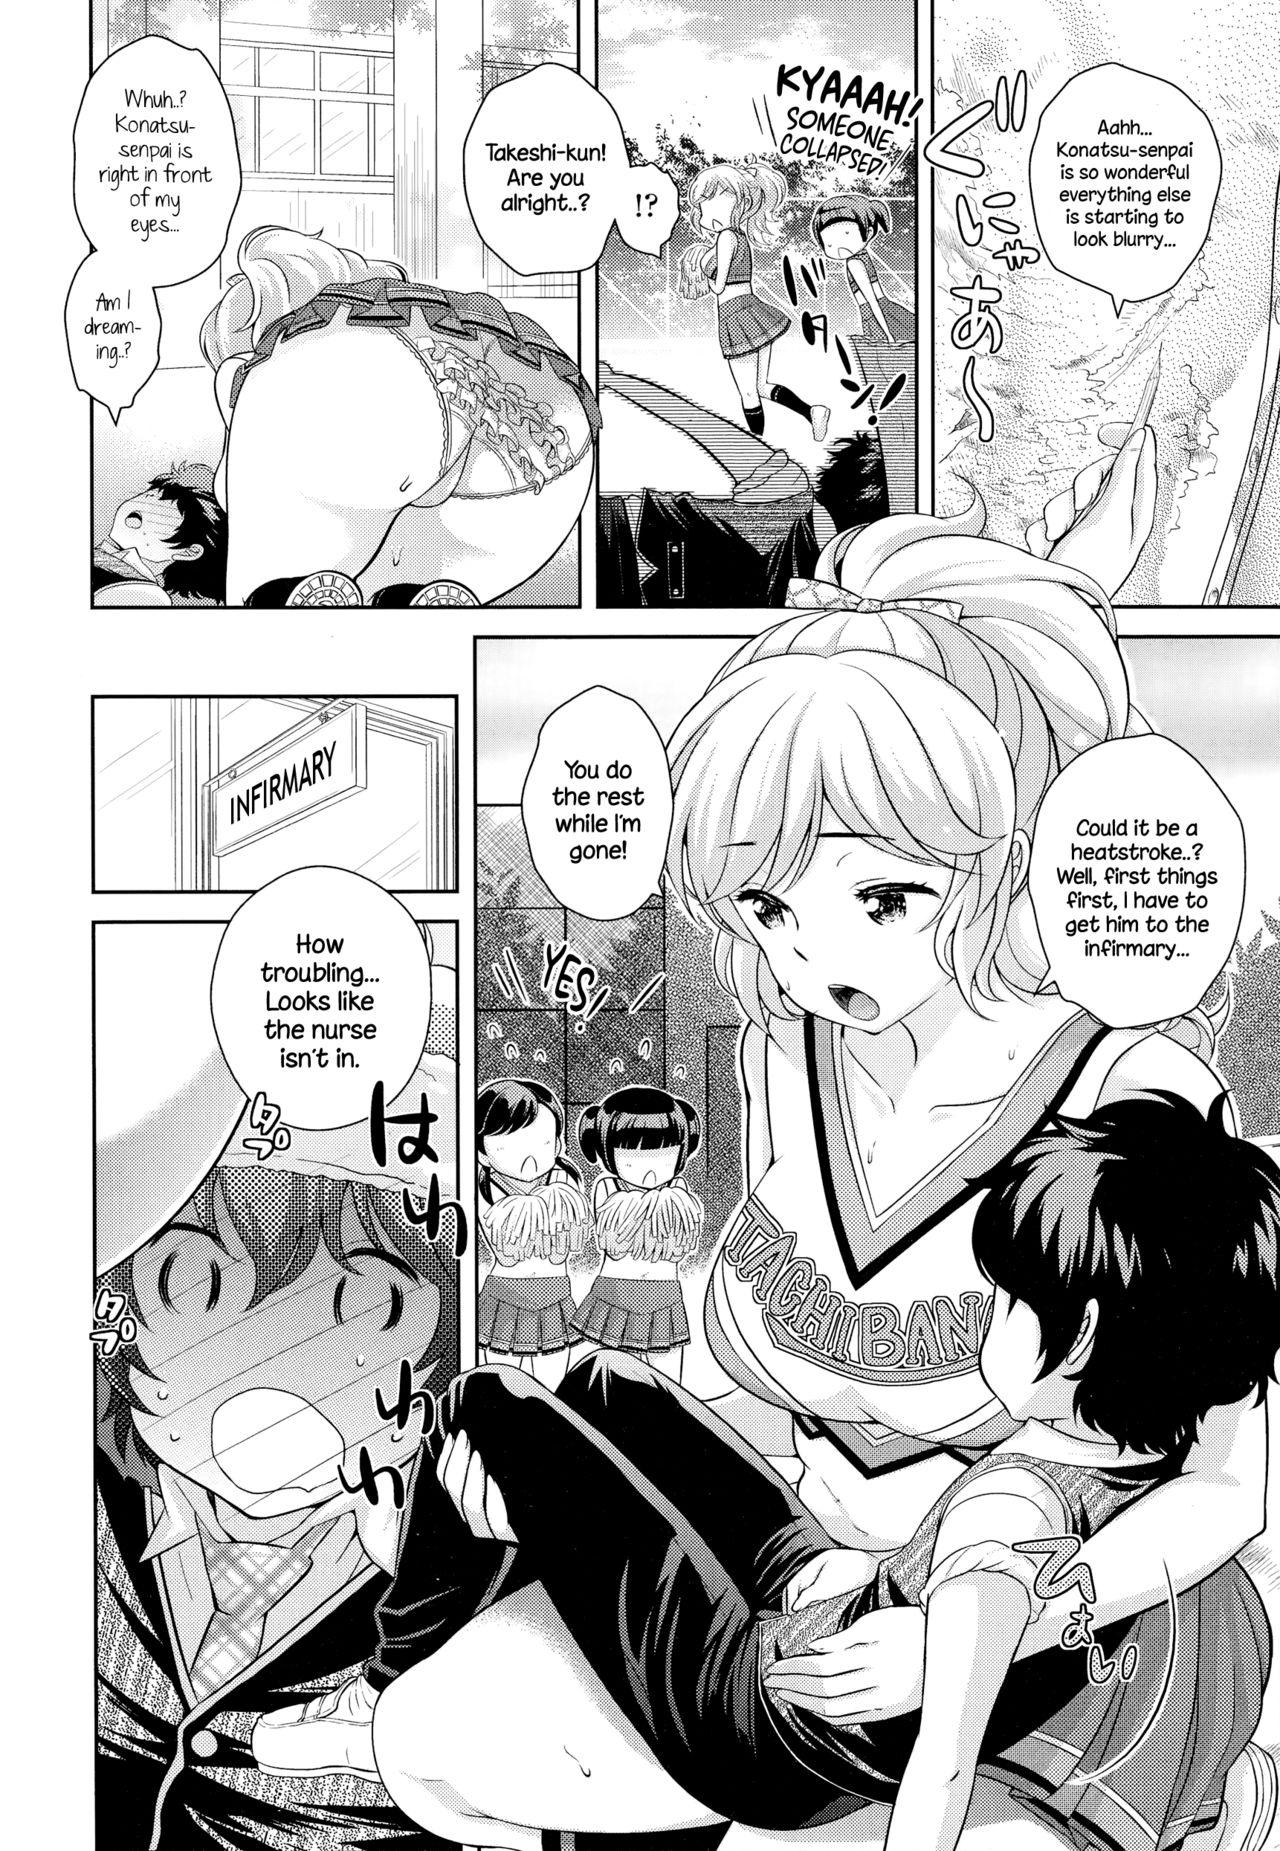 Chicks Boku no Konatsu-senpai Amatuer - Page 2